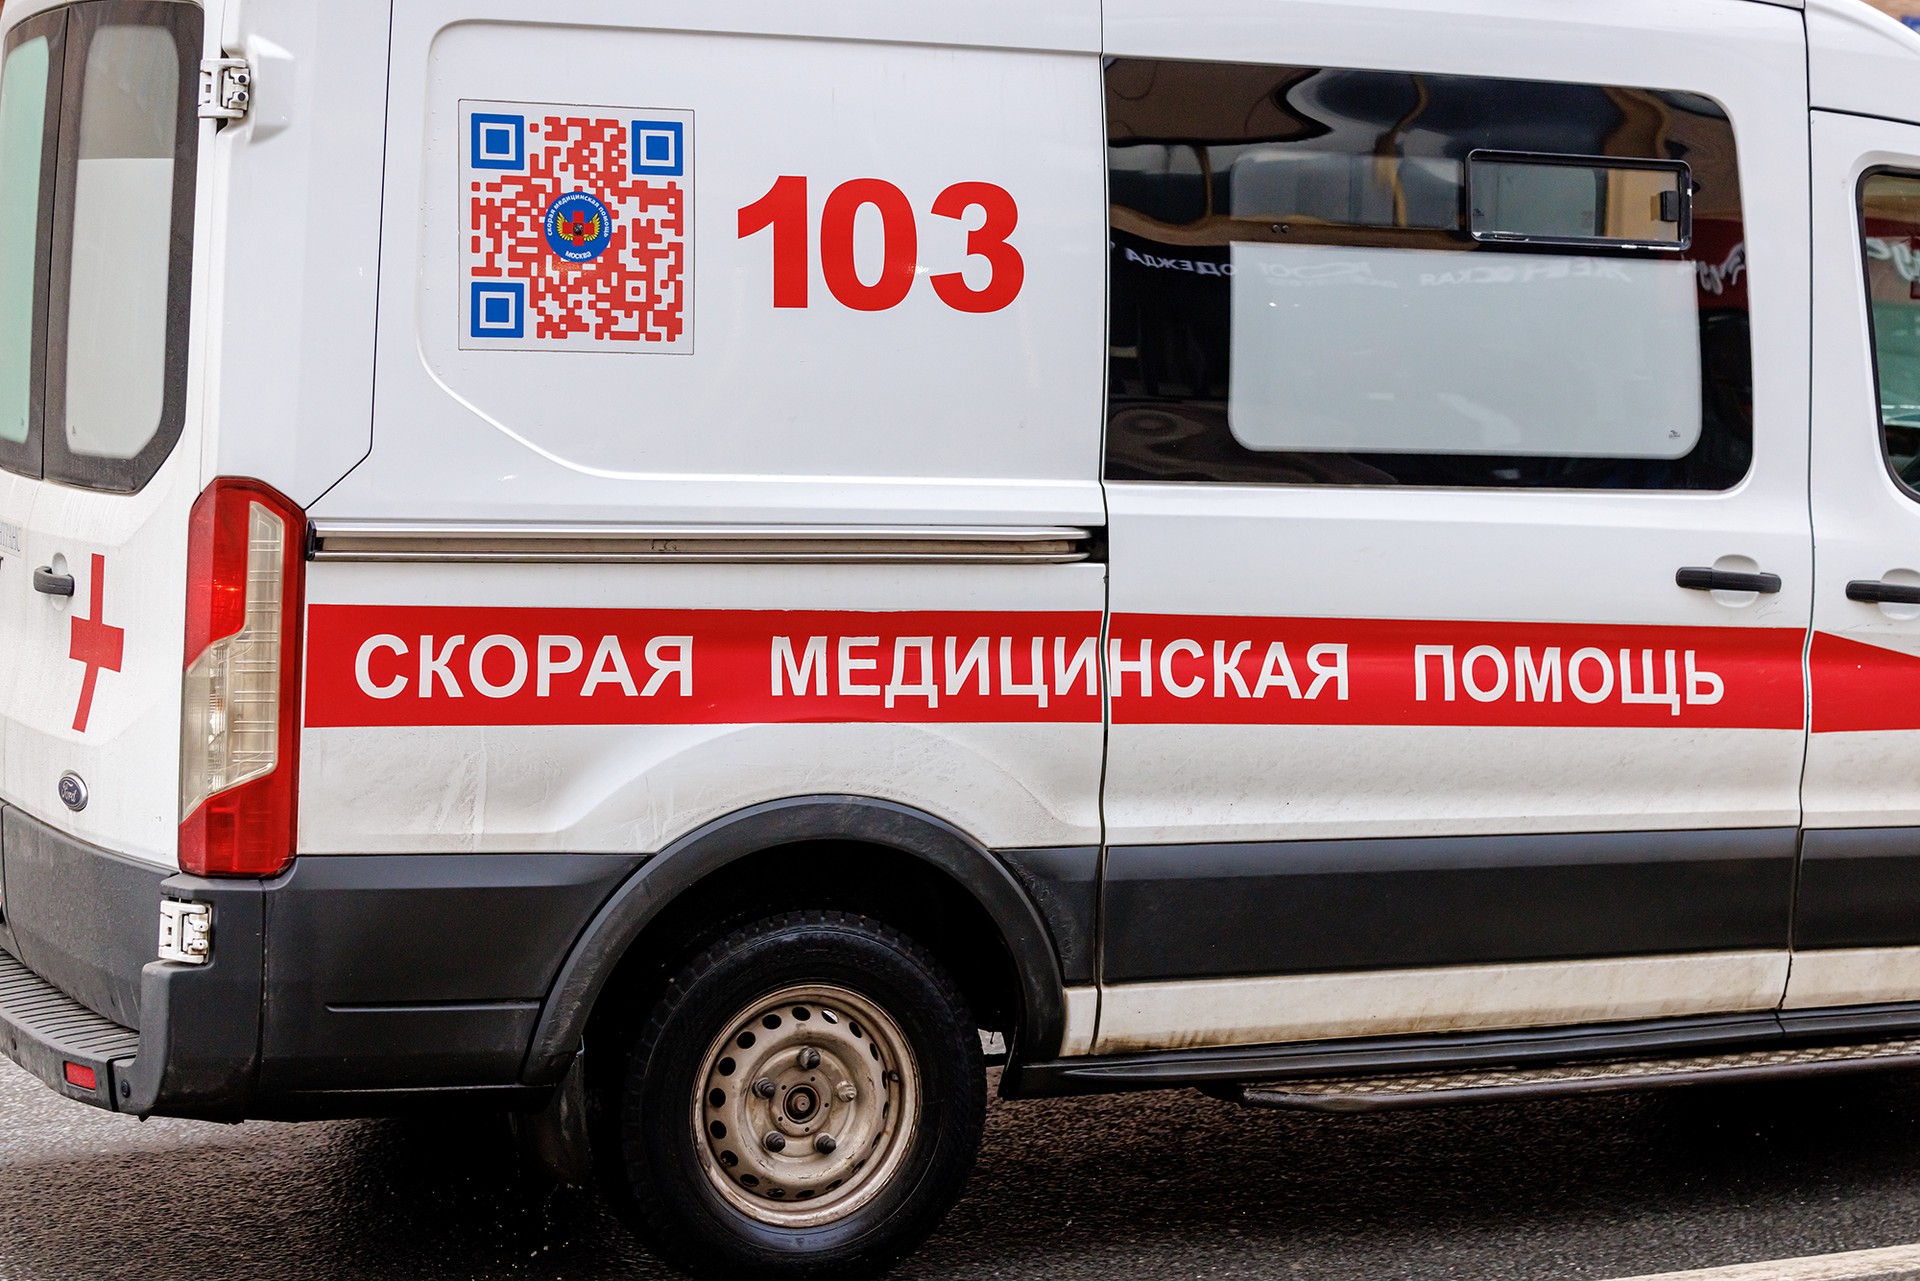 На юго-западе Москвы столкнулись такси и скорая помощь